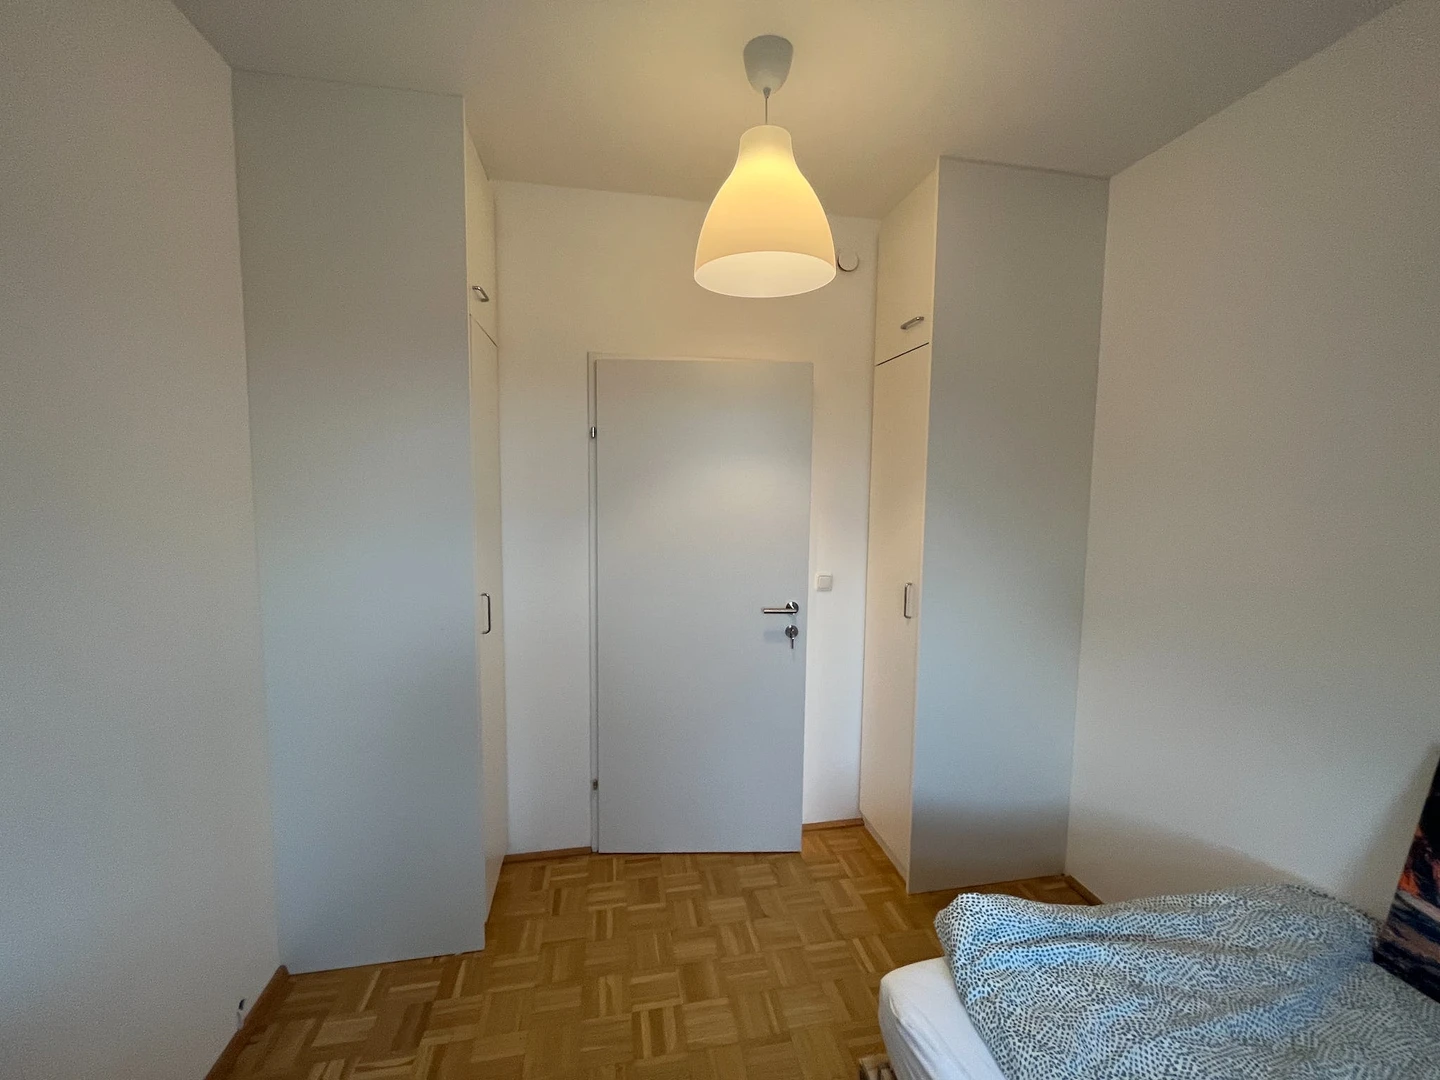 Linz de çift kişilik yataklı kiralık oda